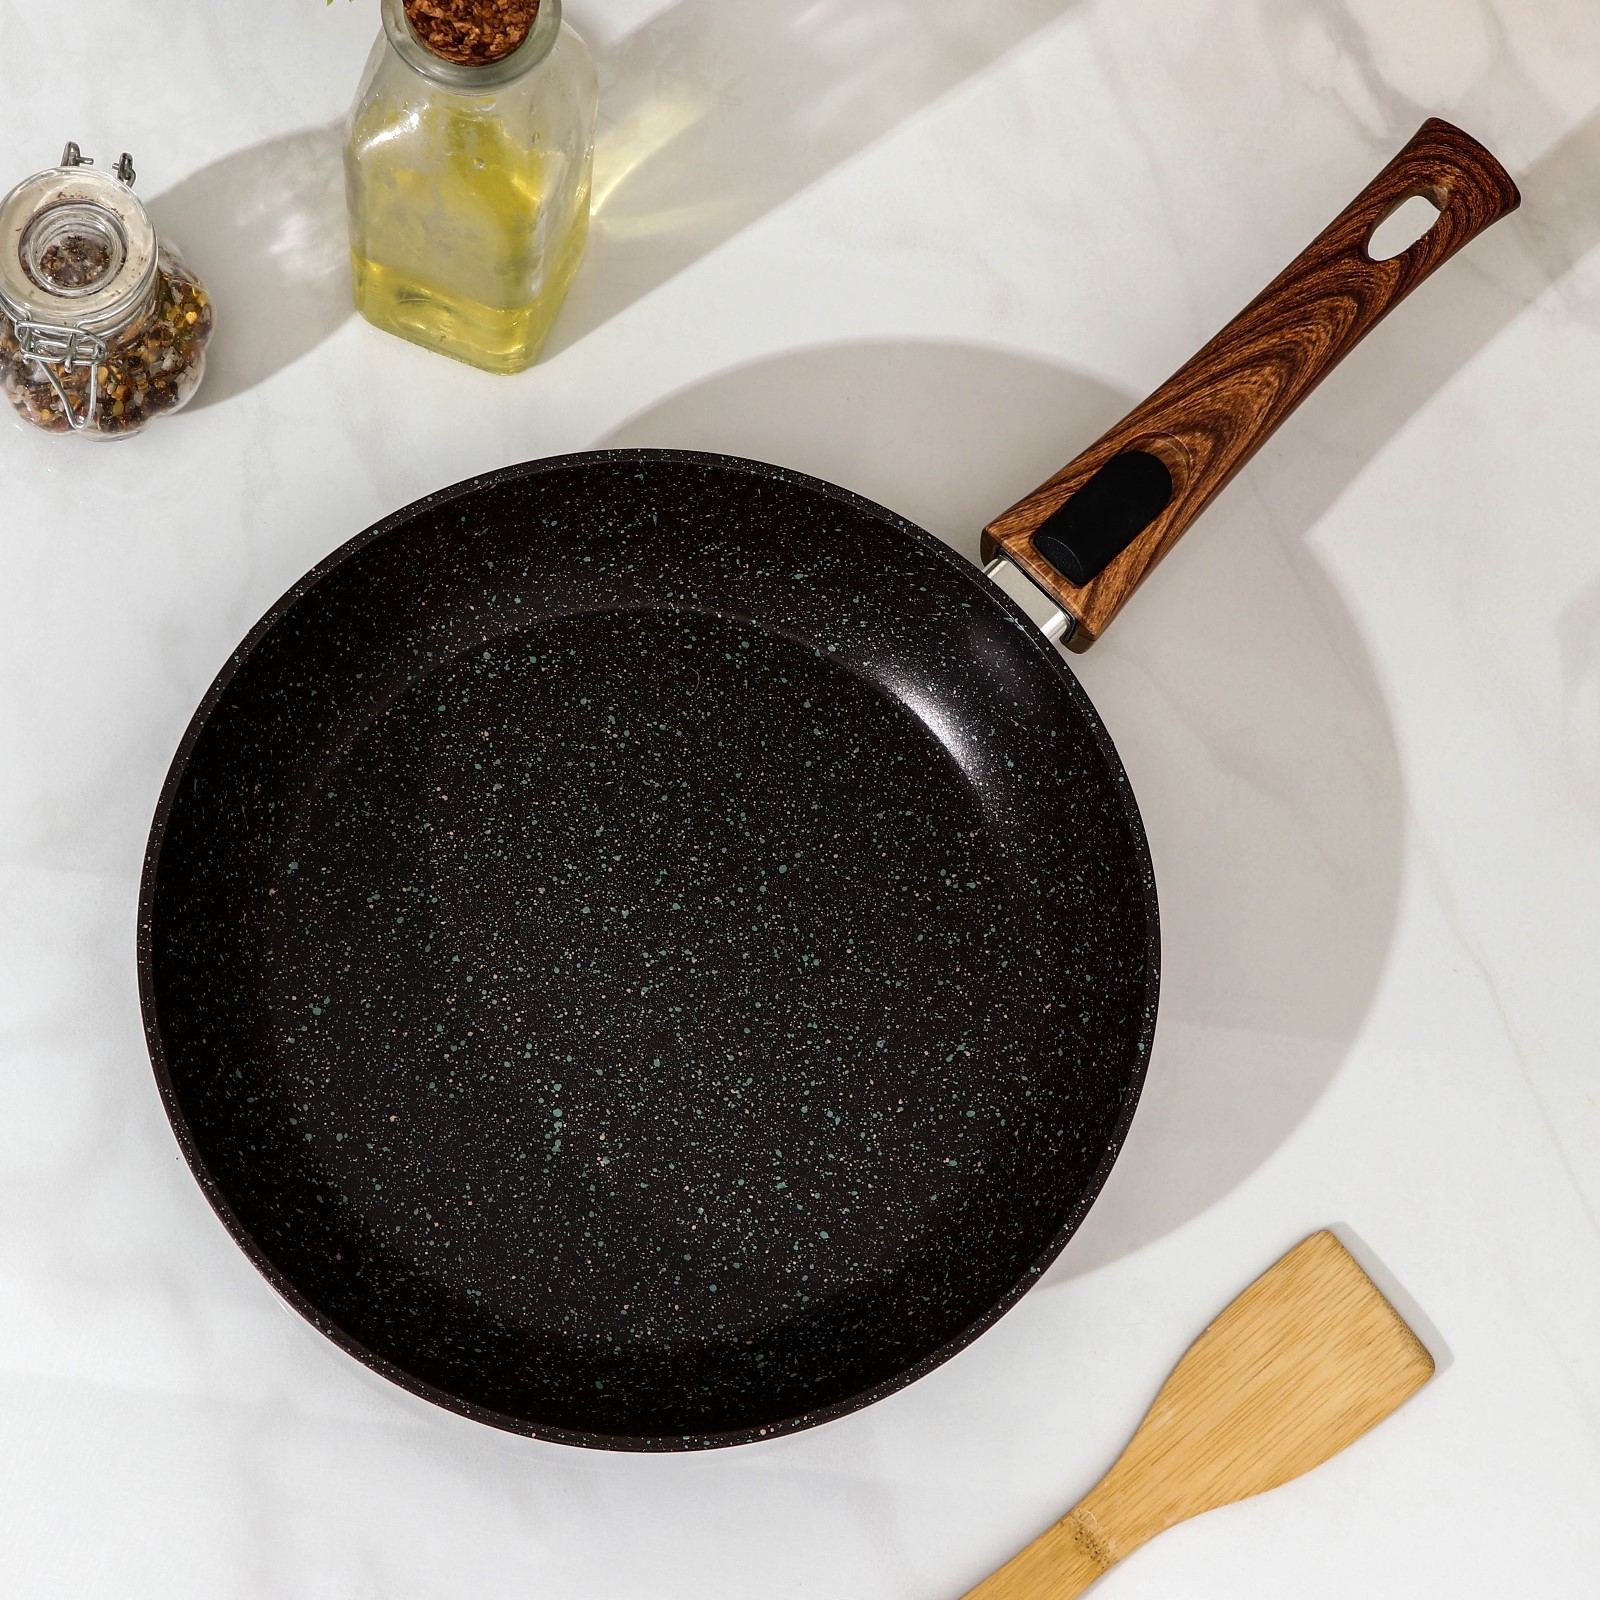 Сковорода Granit цвет: черный (44х26х5 см), размер 44х26х5 см sil907985 Сковорода Granit цвет: черный (44х26х5 см) - фото 1